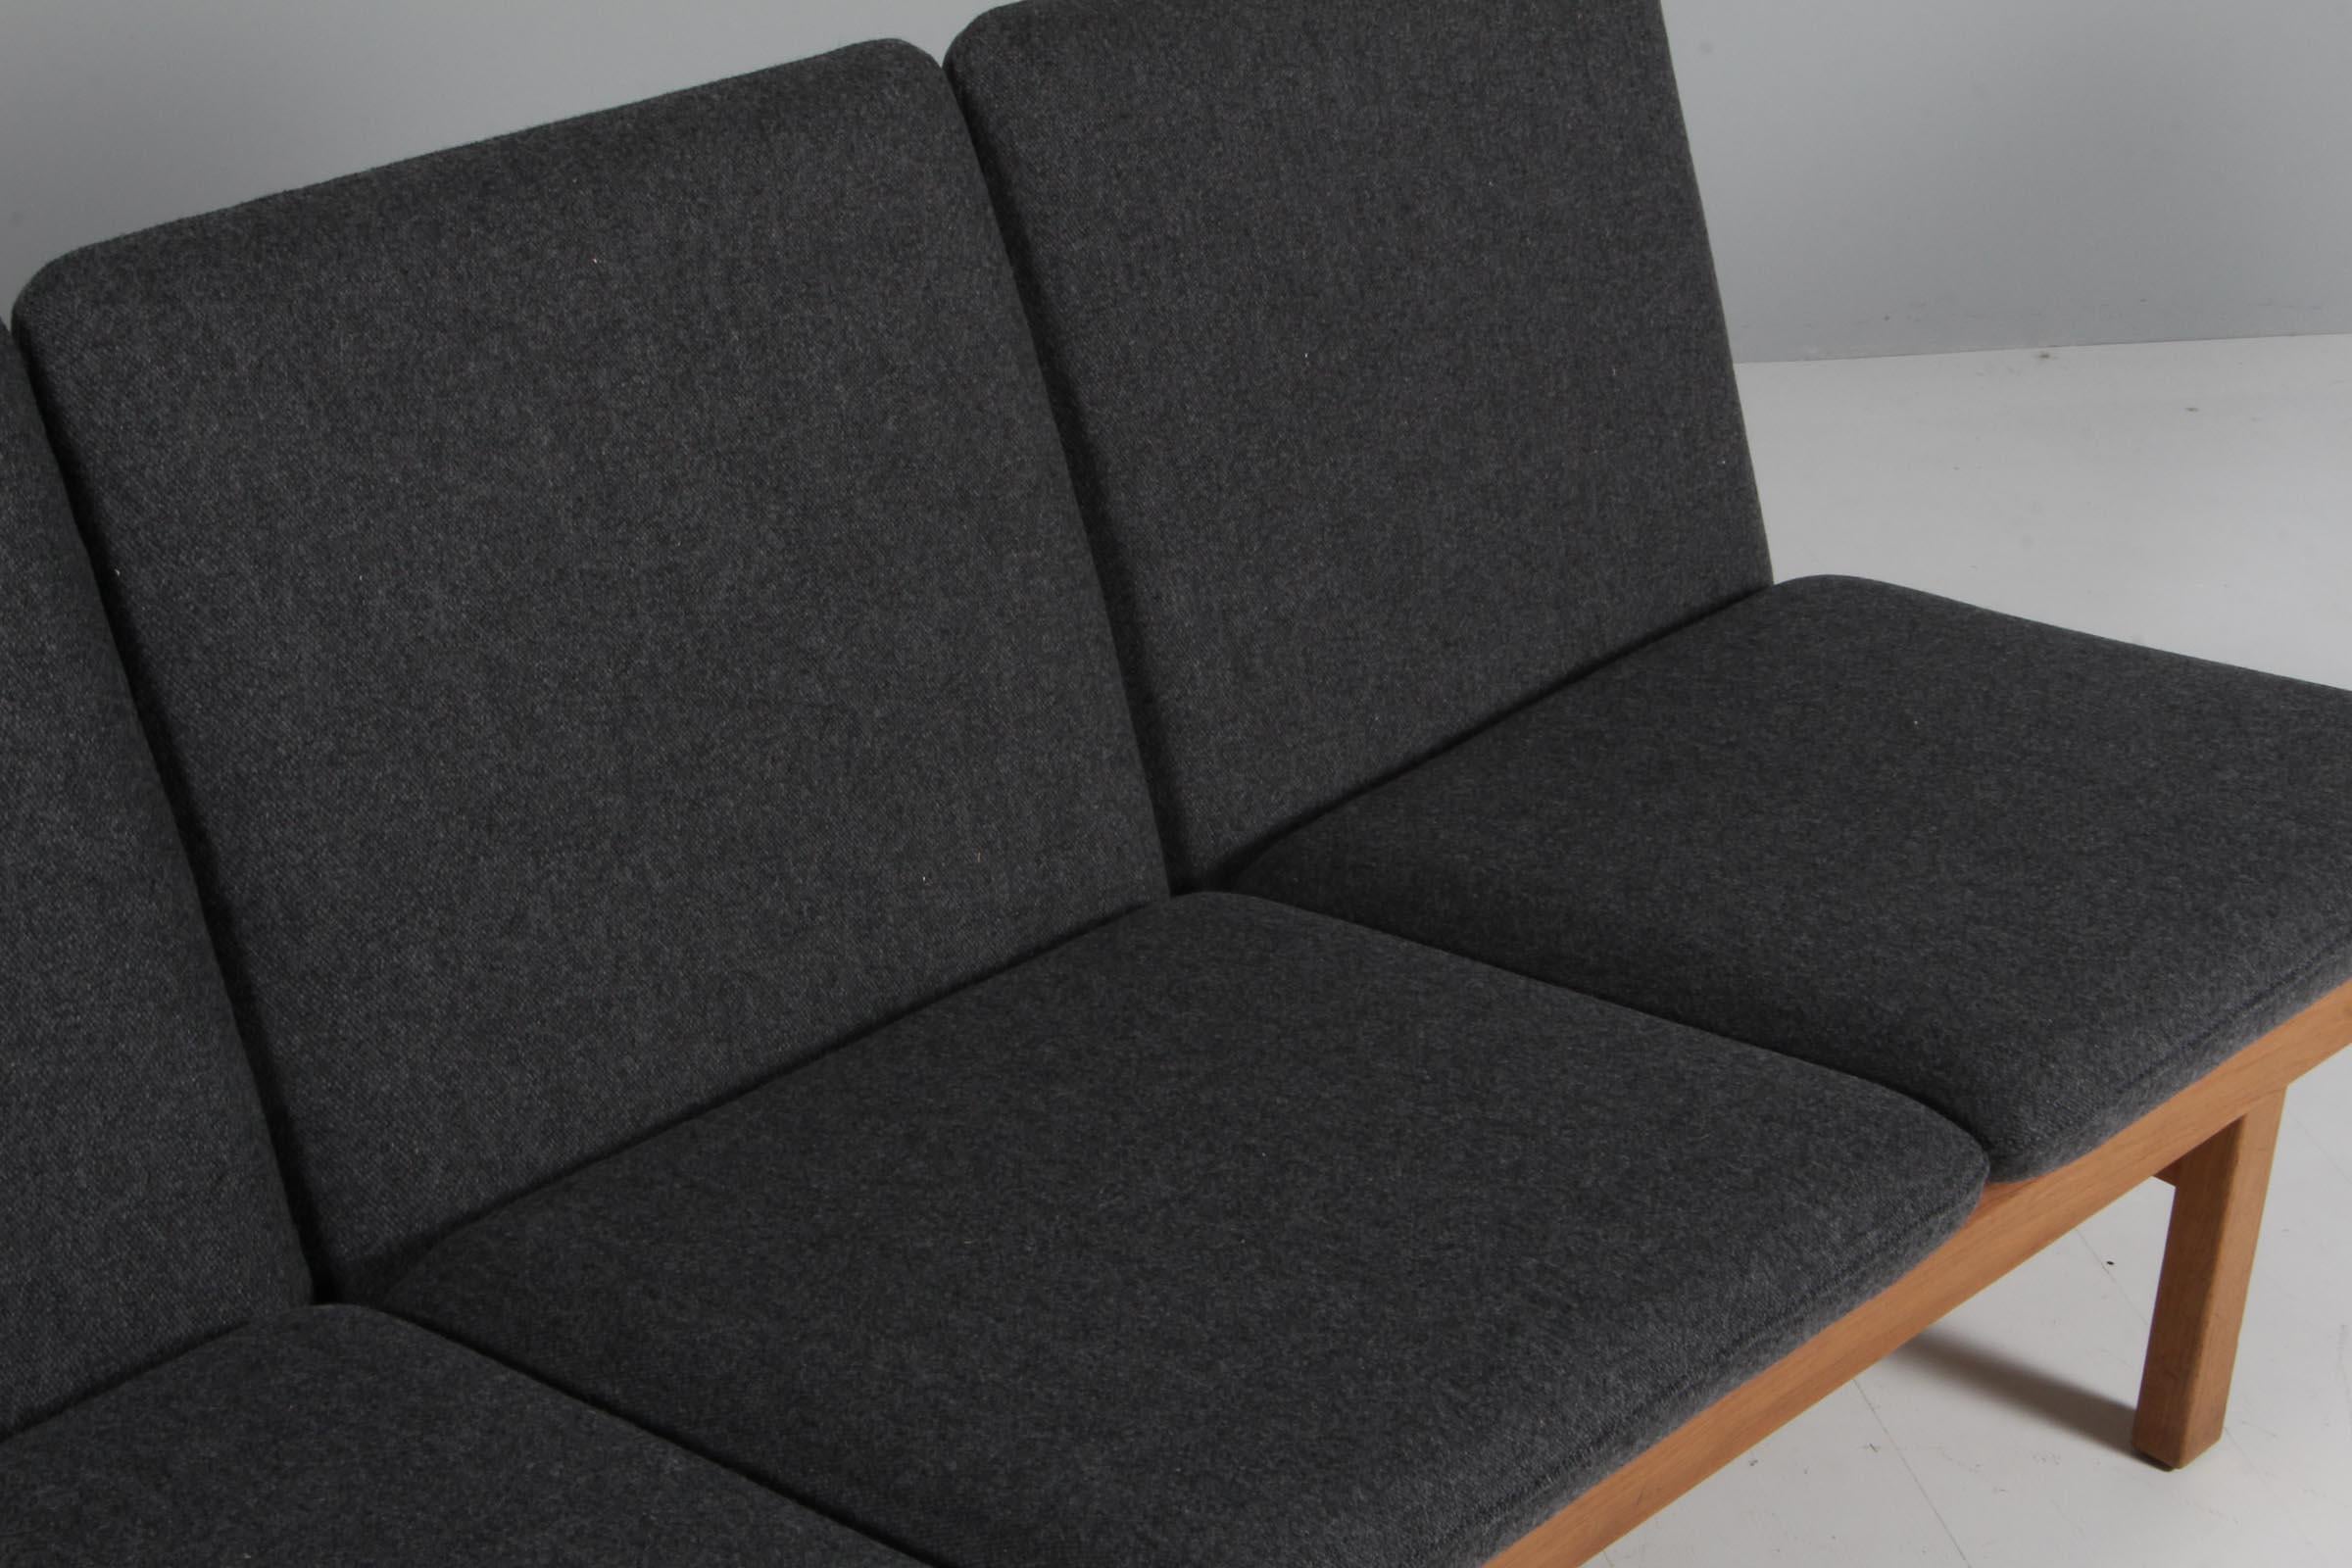 Børge Mogensen Viersitzer-Sofa mit Gestell aus seifenbehandelter Eiche. '

Neue Polsterkissen mit Wollstoff.

Modell 2219, hergestellt von Fredericia Furniture